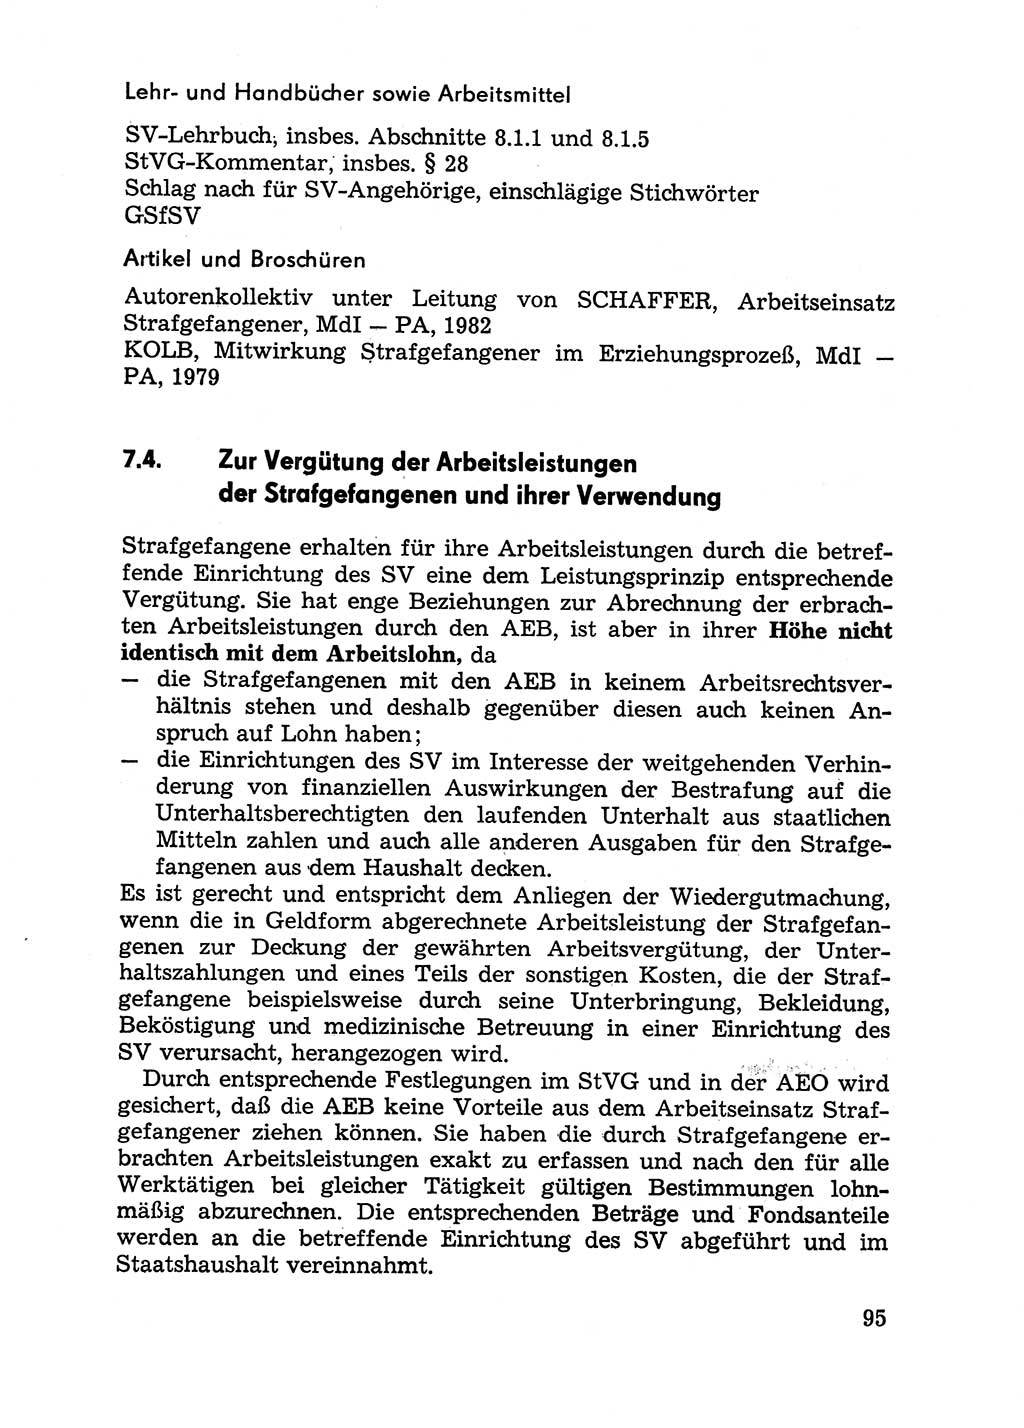 Handbuch für Betriebsangehörige, Abteilung Strafvollzug (SV) [Ministerium des Innern (MdI) Deutsche Demokratische Republik (DDR)] 1981, Seite 95 (Hb. BA Abt. SV MdI DDR 1981, S. 95)